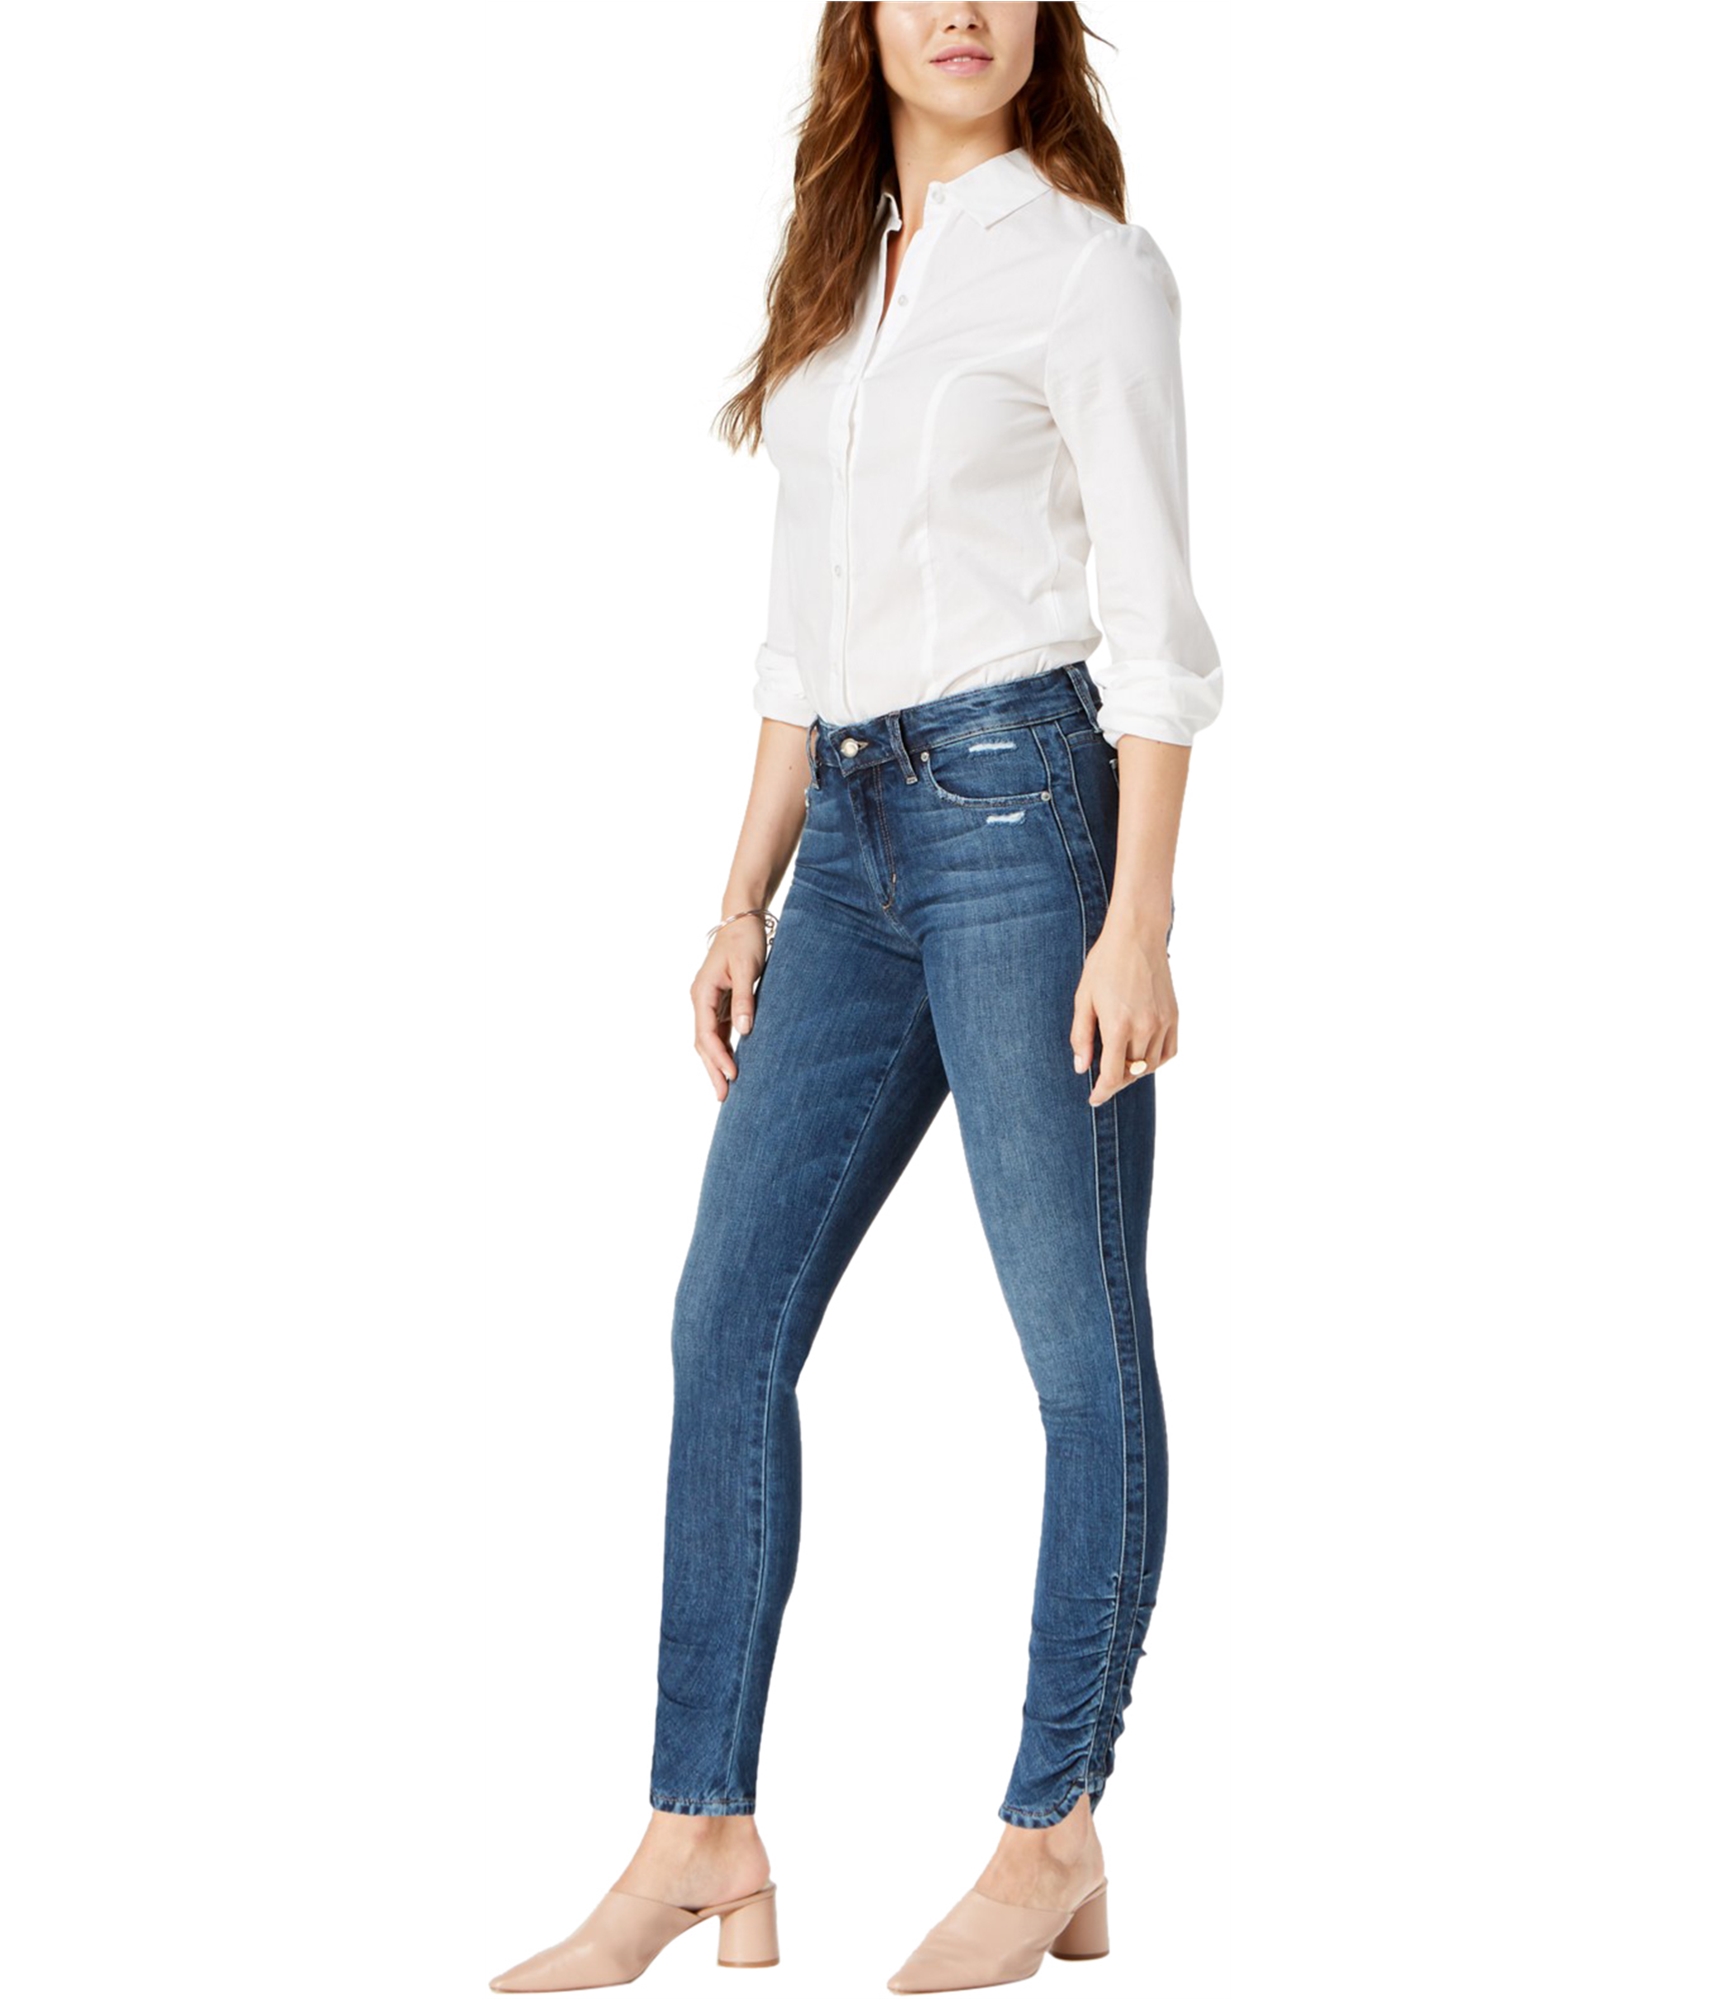 woman-wearing-skinny-jeans